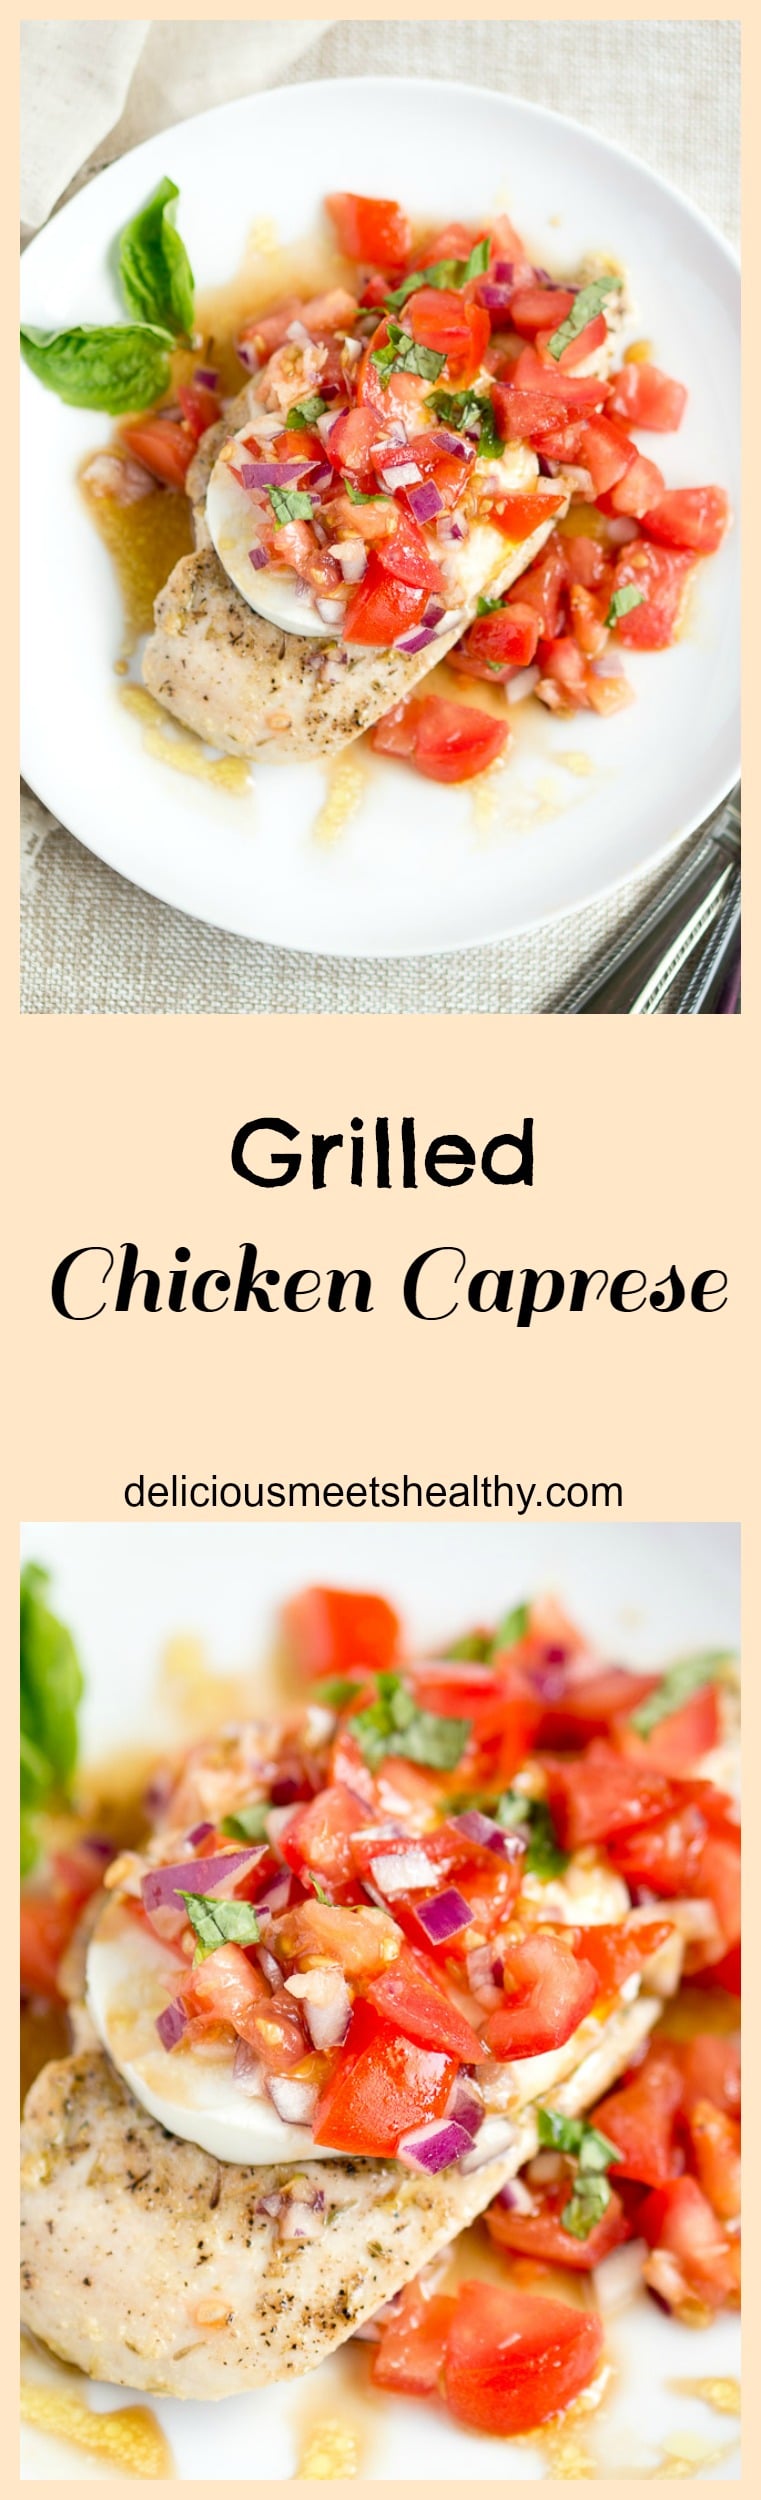 Grilled Chicken Caprese | www.deliciousmeetshealthy.com